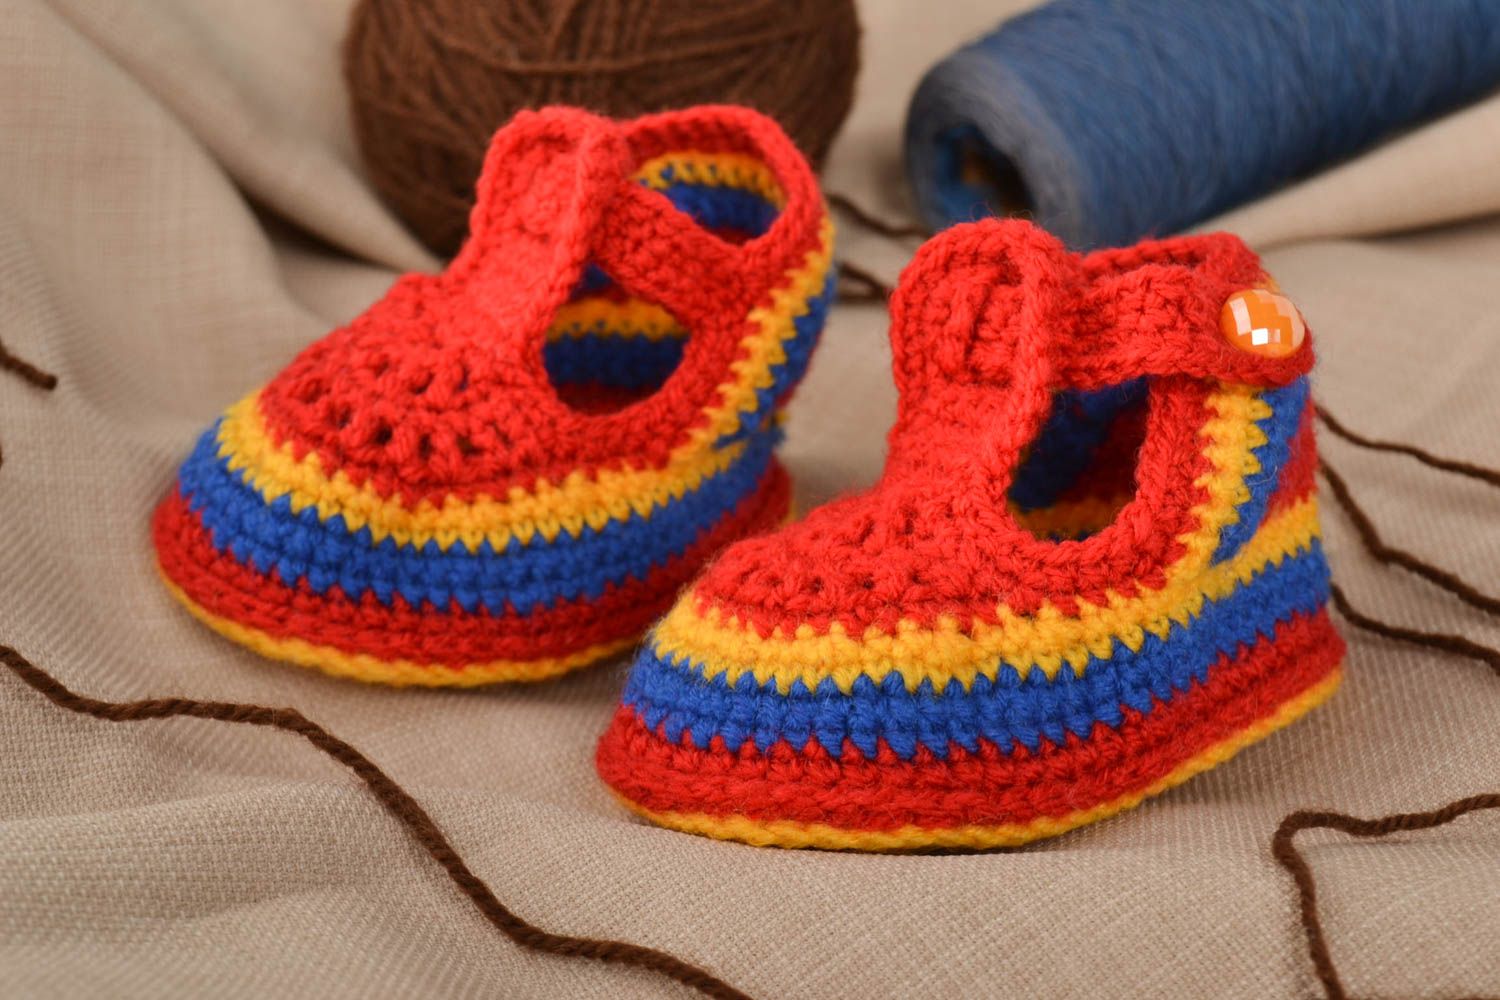 Unusual handmade crochet baby booties warm baby booties baby accessories photo 1